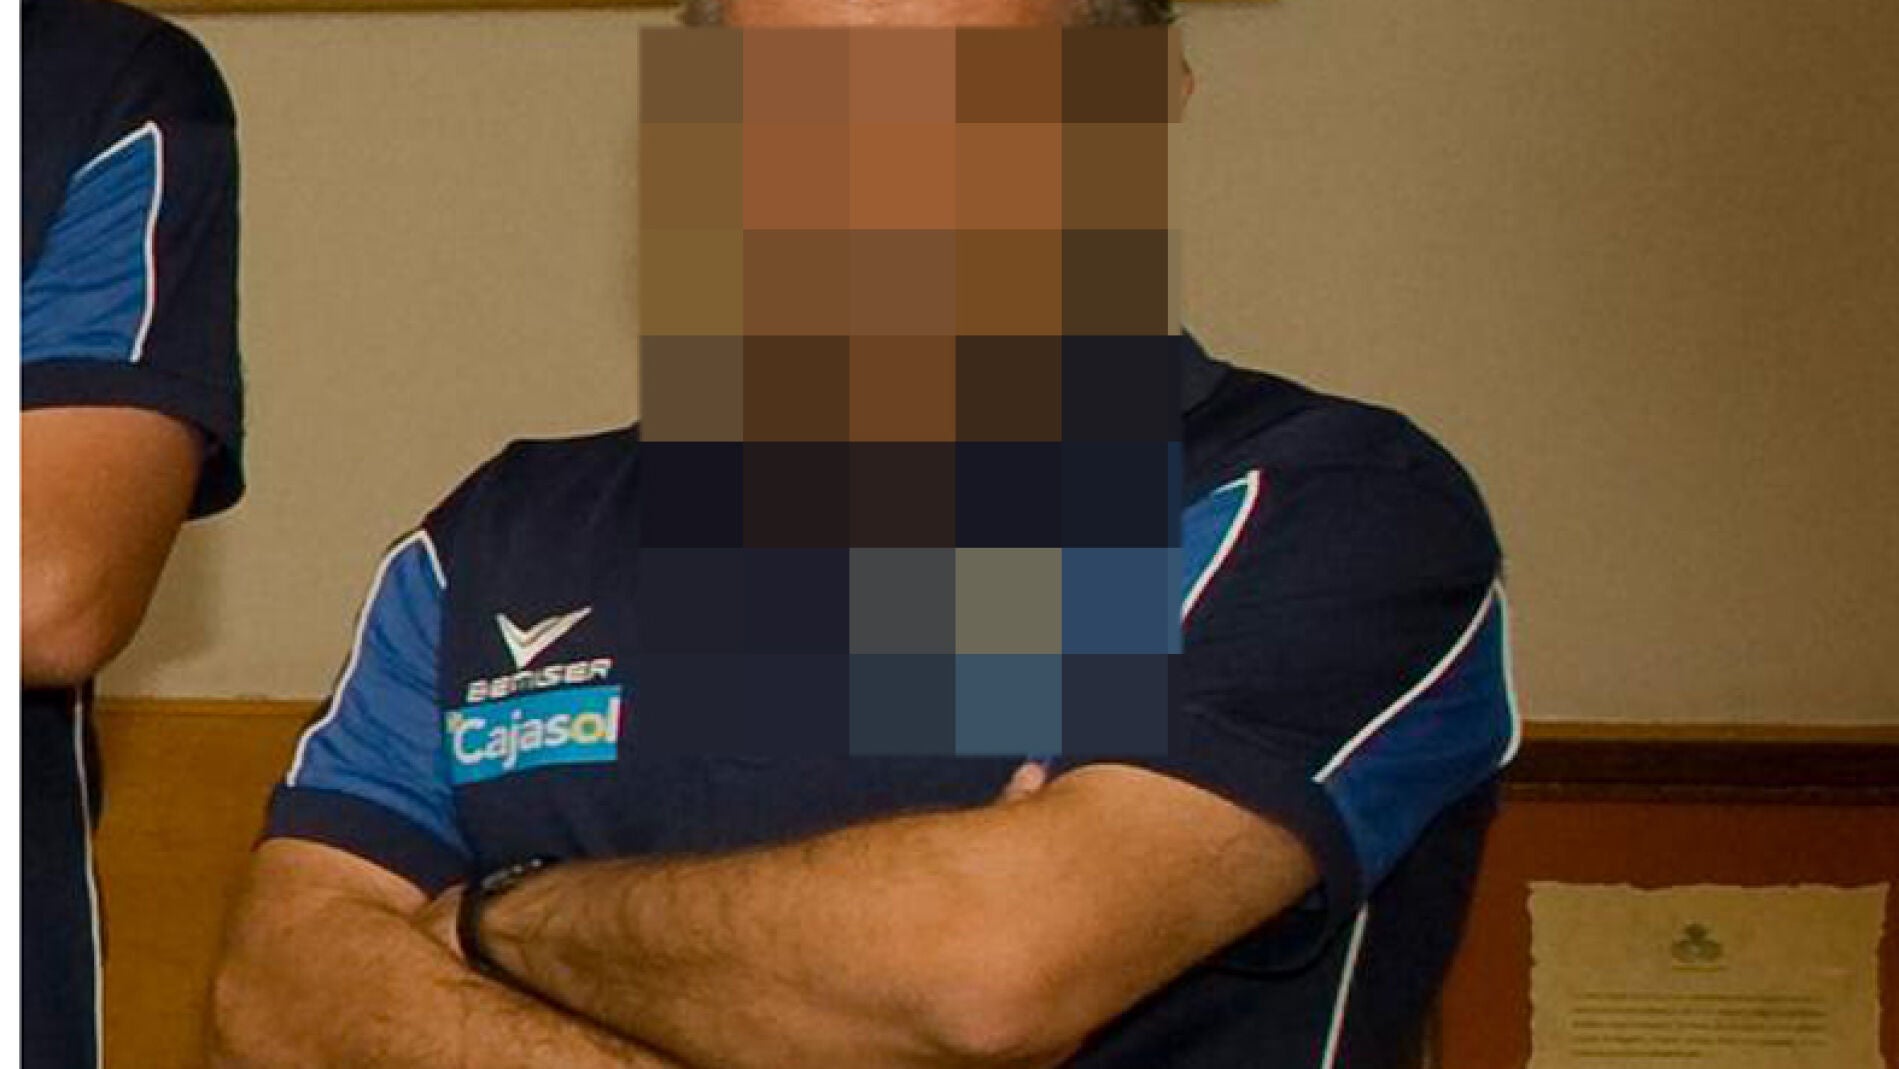 El entrenador de fútbol que llevaba 30 años abusando de niñas en Huelva “Me pareces patética si no te dejas curar” foto imagen